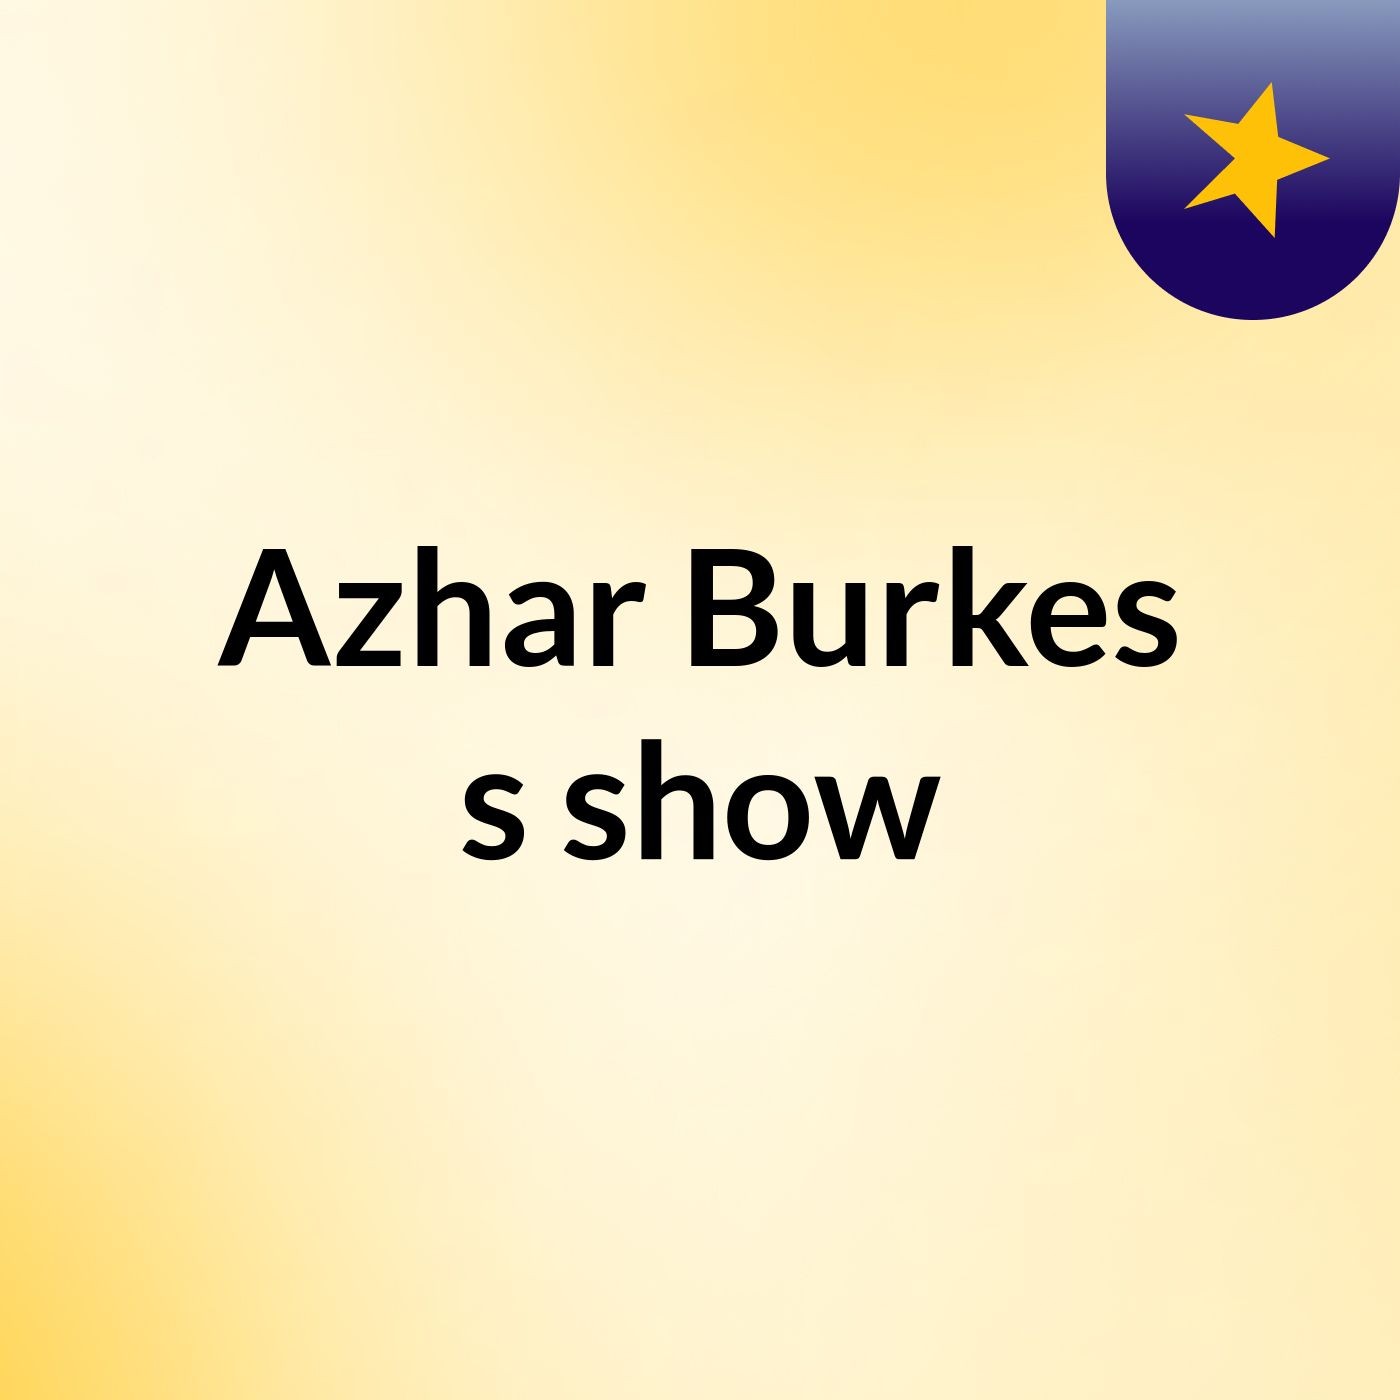 Episode 3 - Azhar Burkes's show